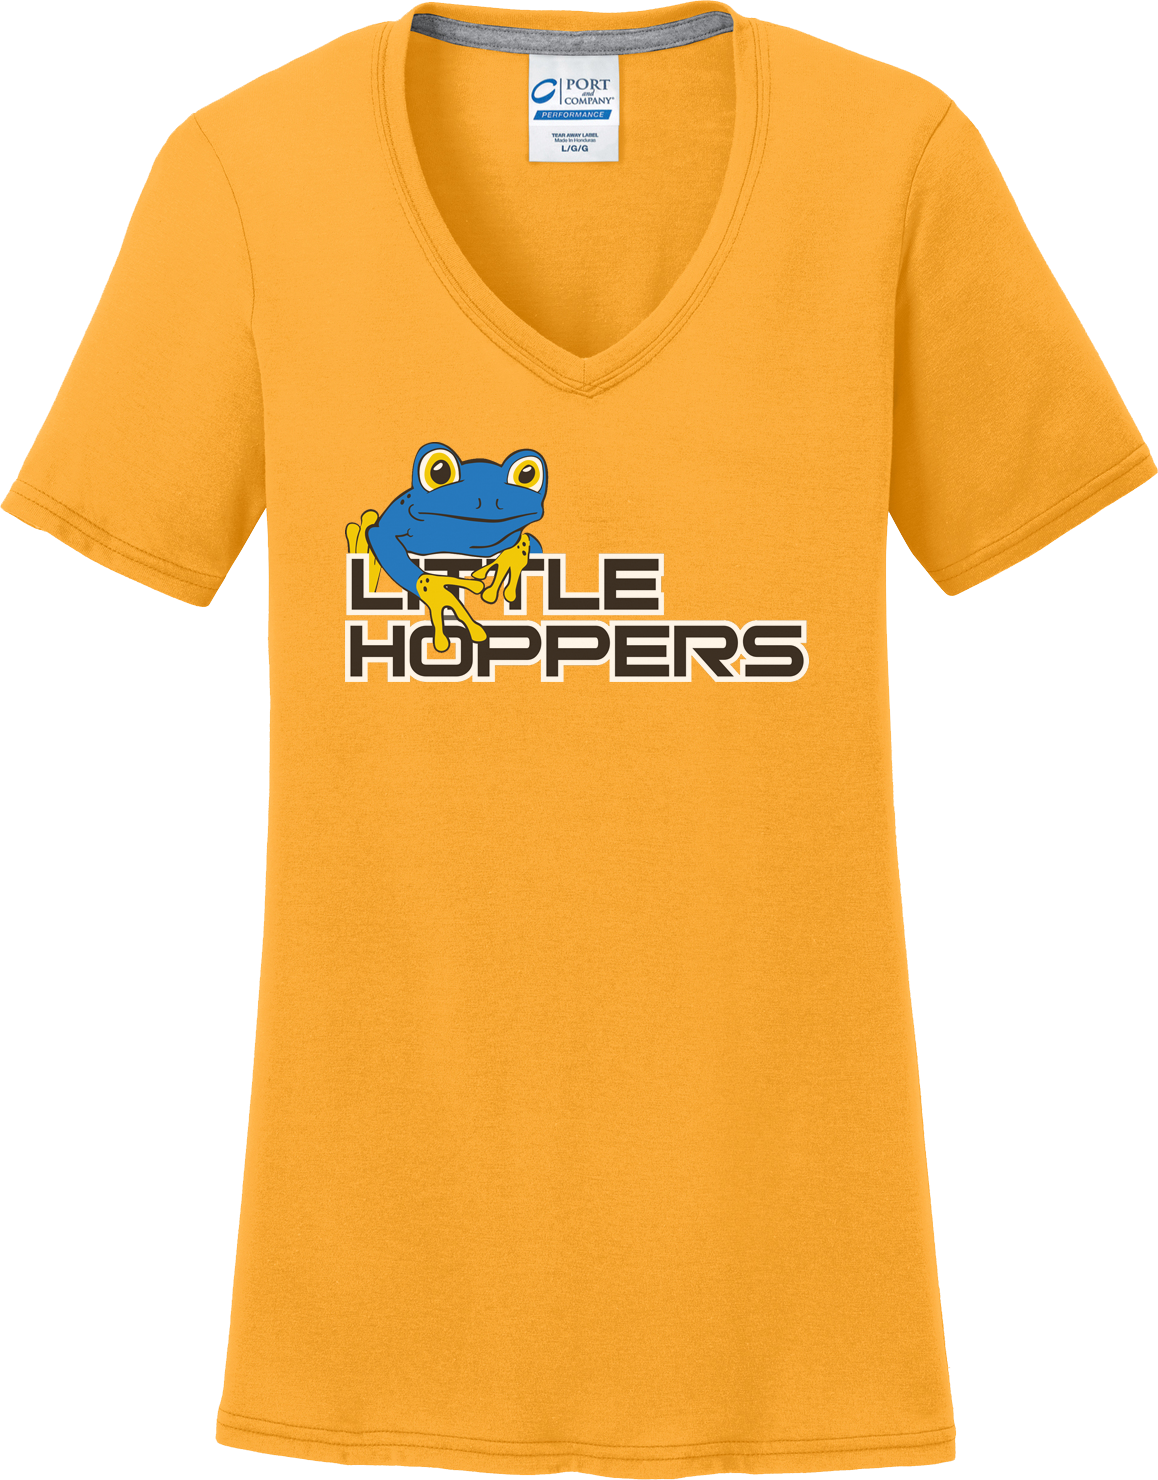 Little Hoppers Women's Gold T-Shirt